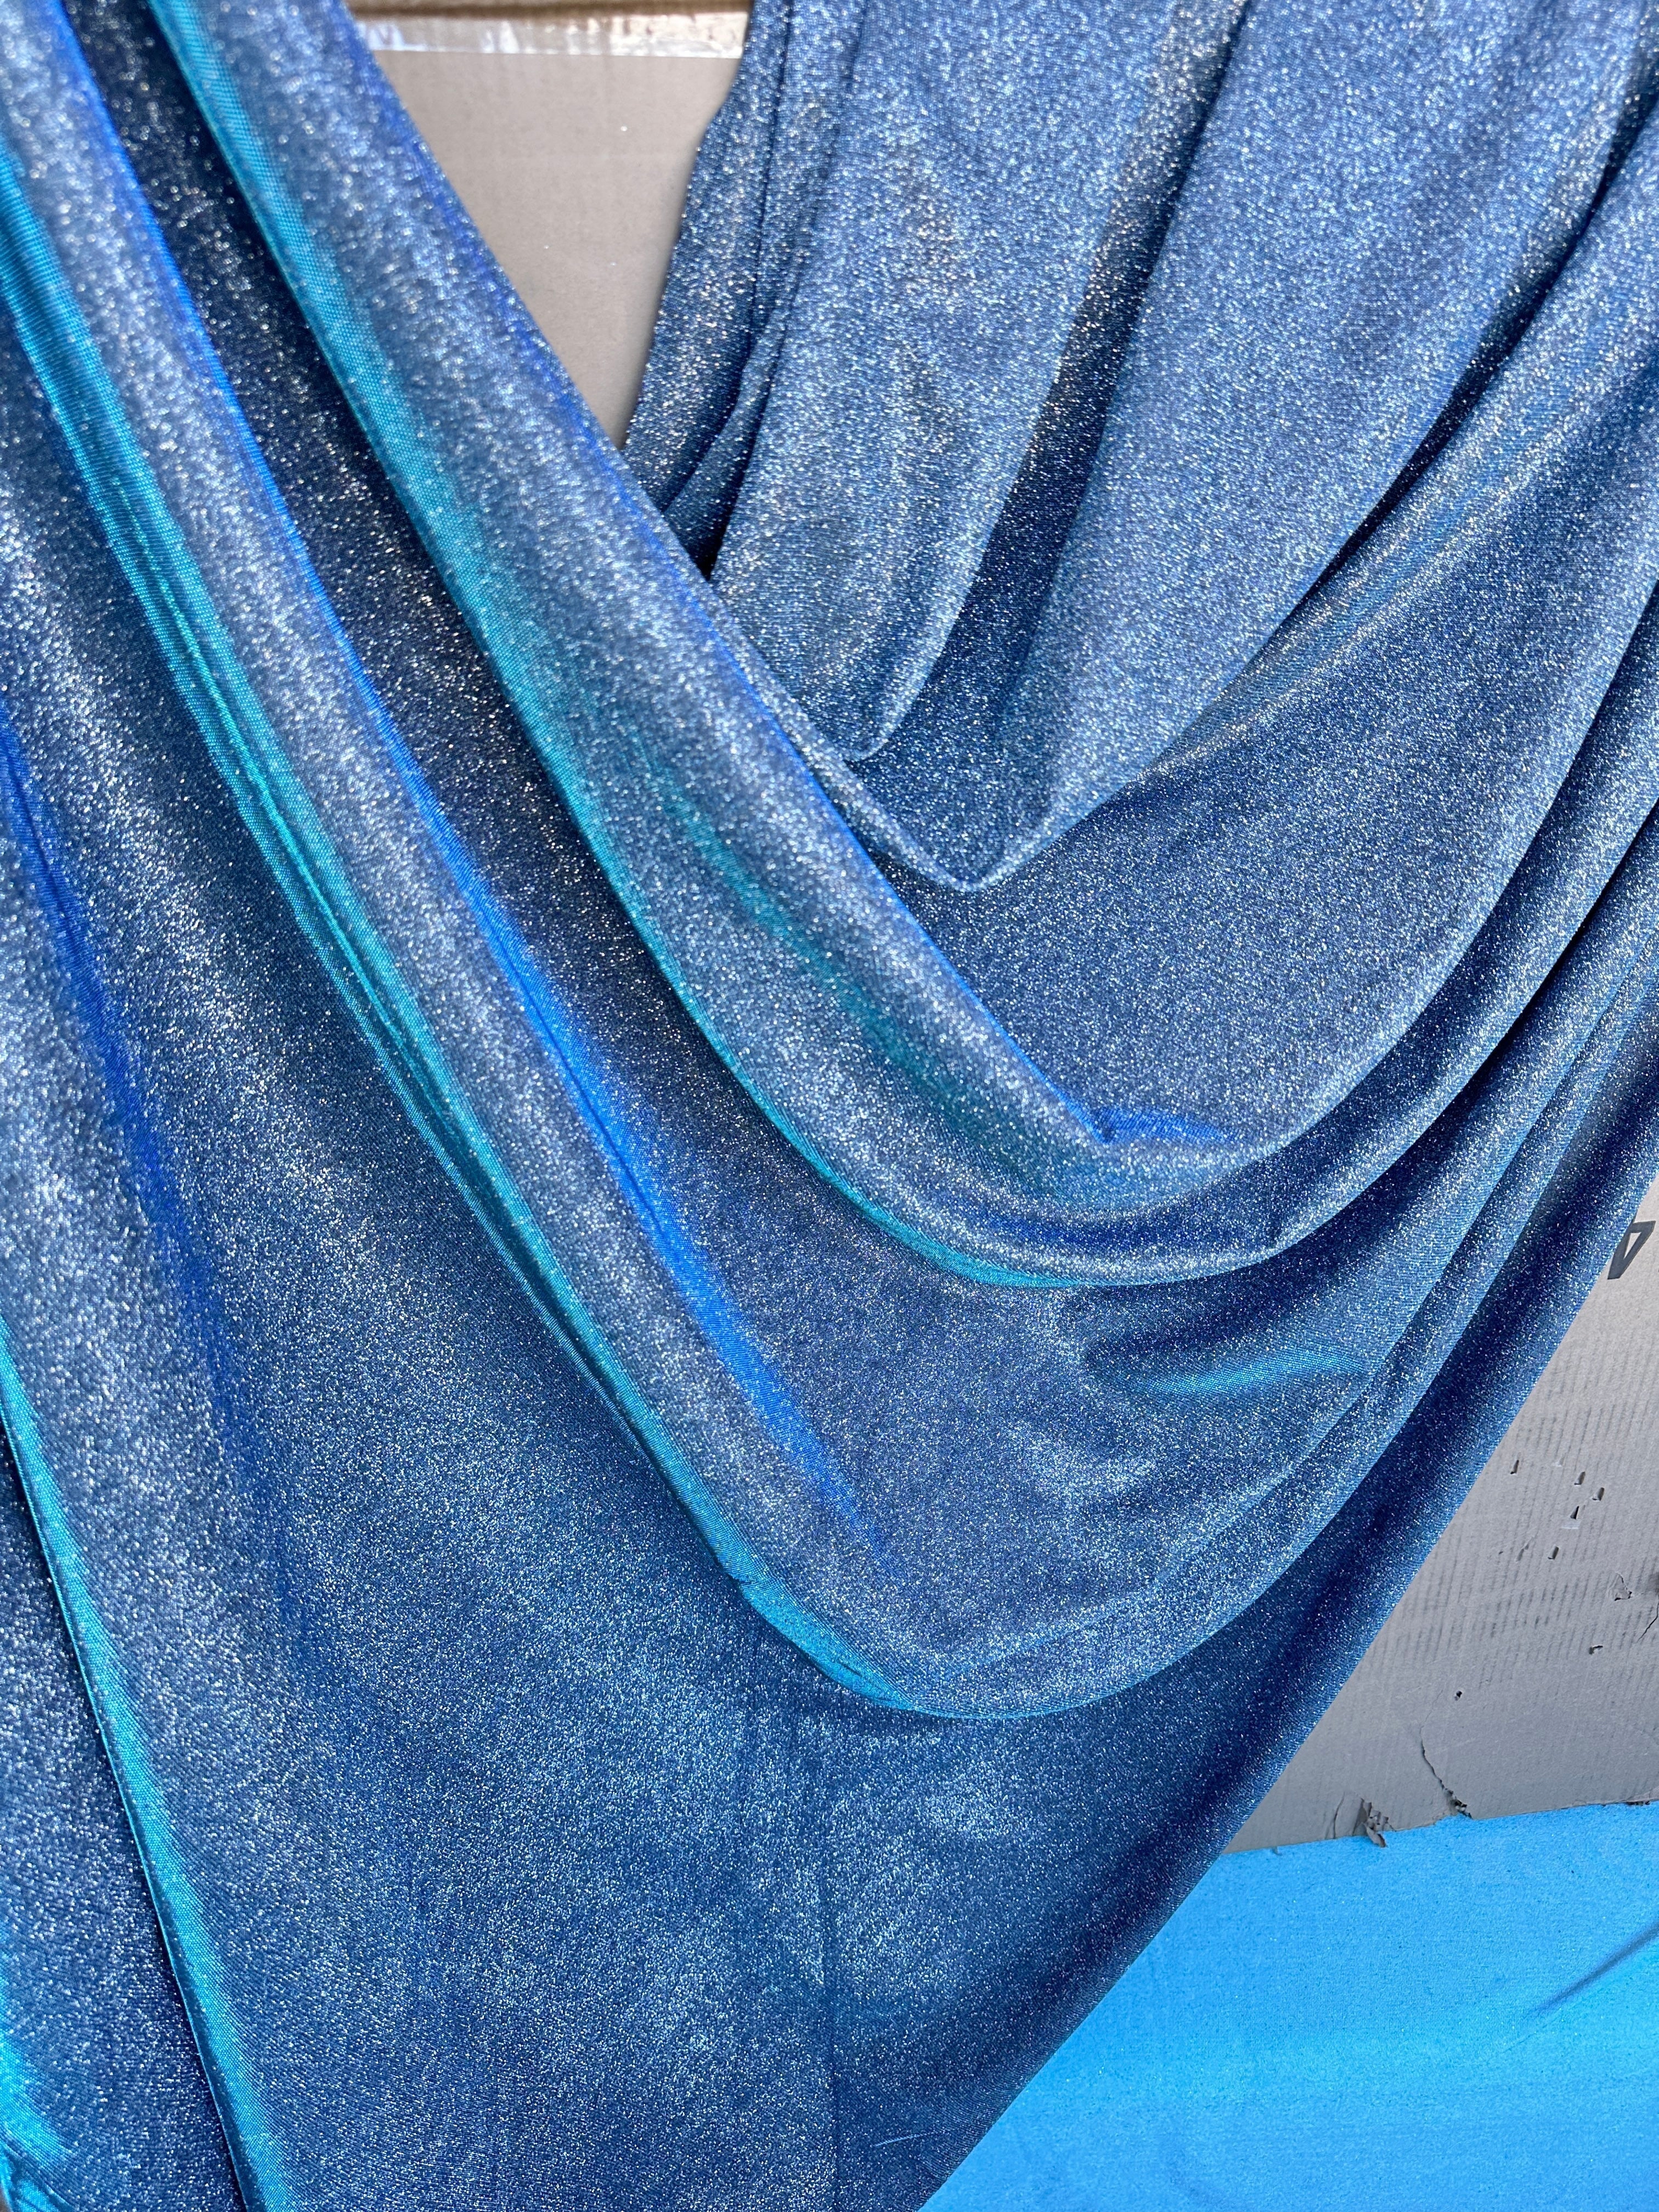 BlueLurex, Sparkling Blue lurex, Metallic Blue lurex, Shimmery Blue lurex, Glamorous Blue lurex, Glittery Blue lurex, Blue Shine lurex, Lurex Fabric, Blue Fashion,Blue Accessories, Lurex for woman, luxury lurex, best quality lurex, lurex online, discounted lurex, lurex for bride